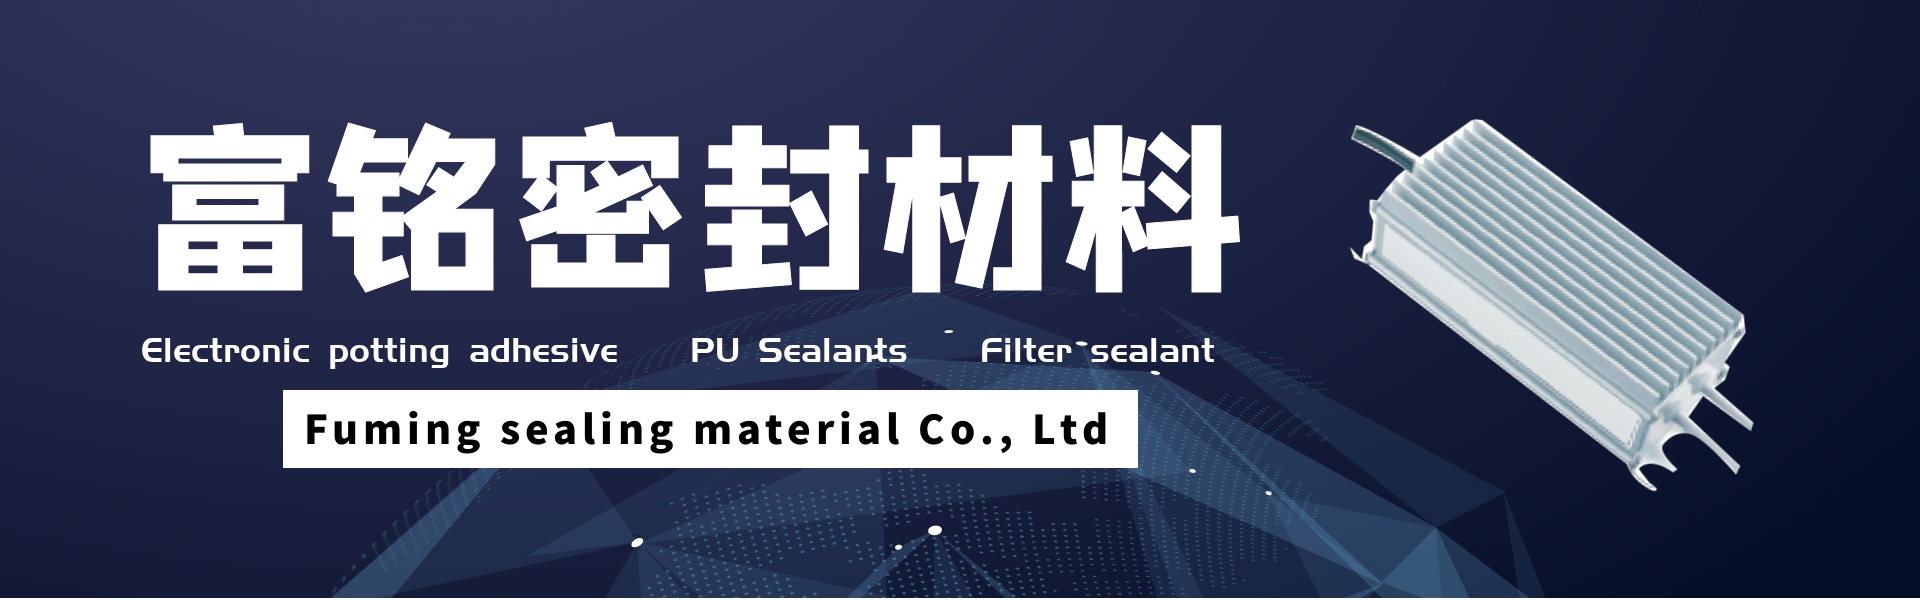 لاصق القدر الإلكتروني ، مانعات التسرب بو ، مانع تسرب المرشح,Dongguan fuming sealing material Co., Ltd